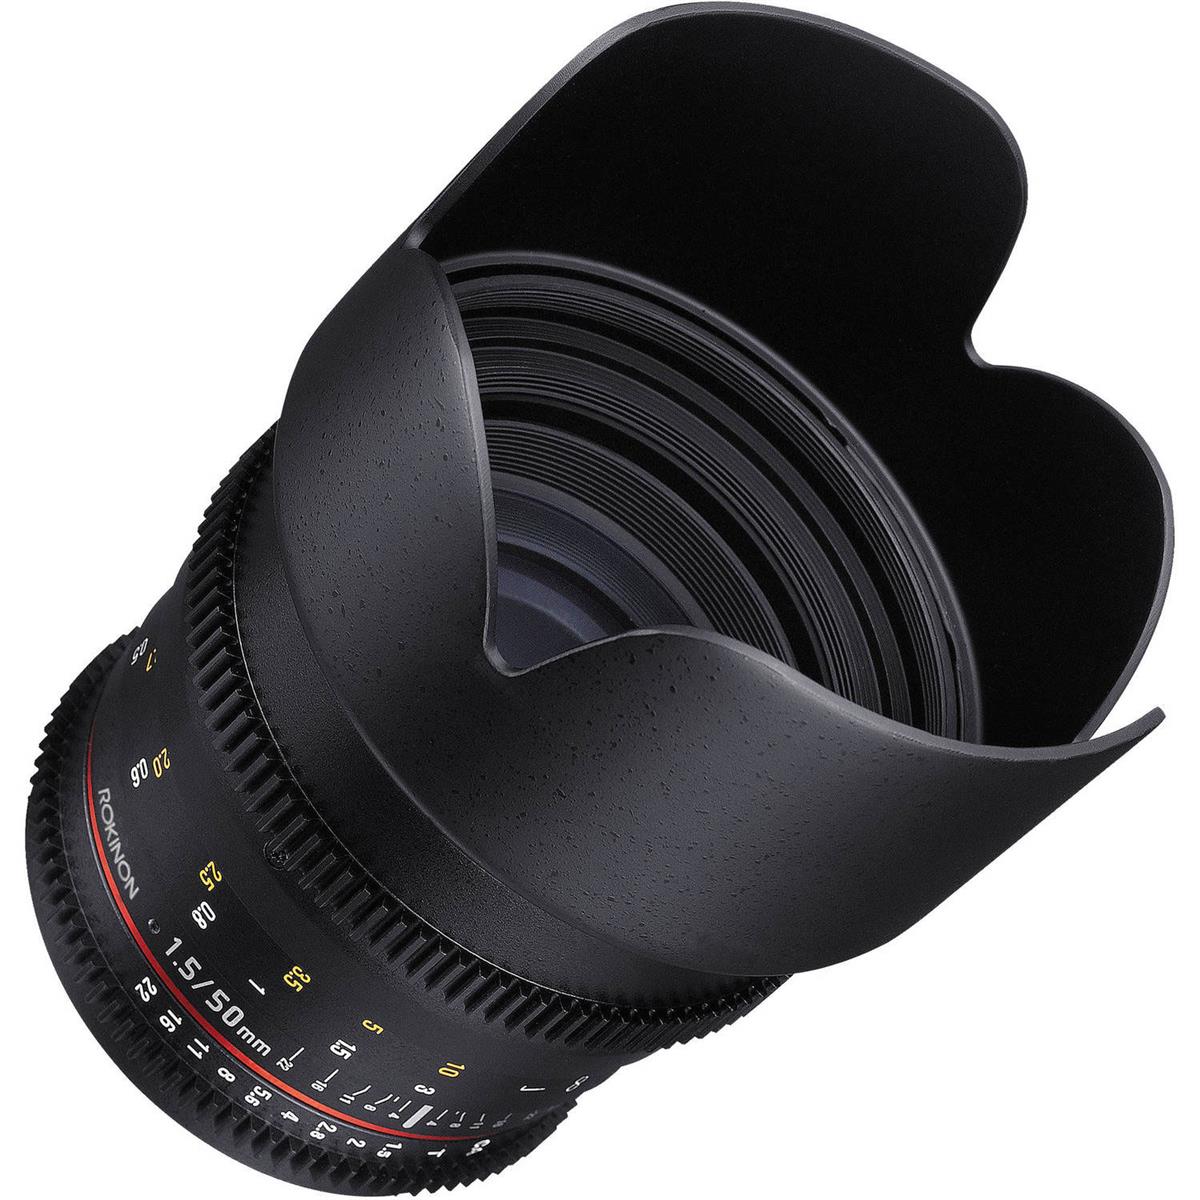 Rokinon 50mm T1.5 Cine DS AS IF UMC Full Frame Lens for Sony